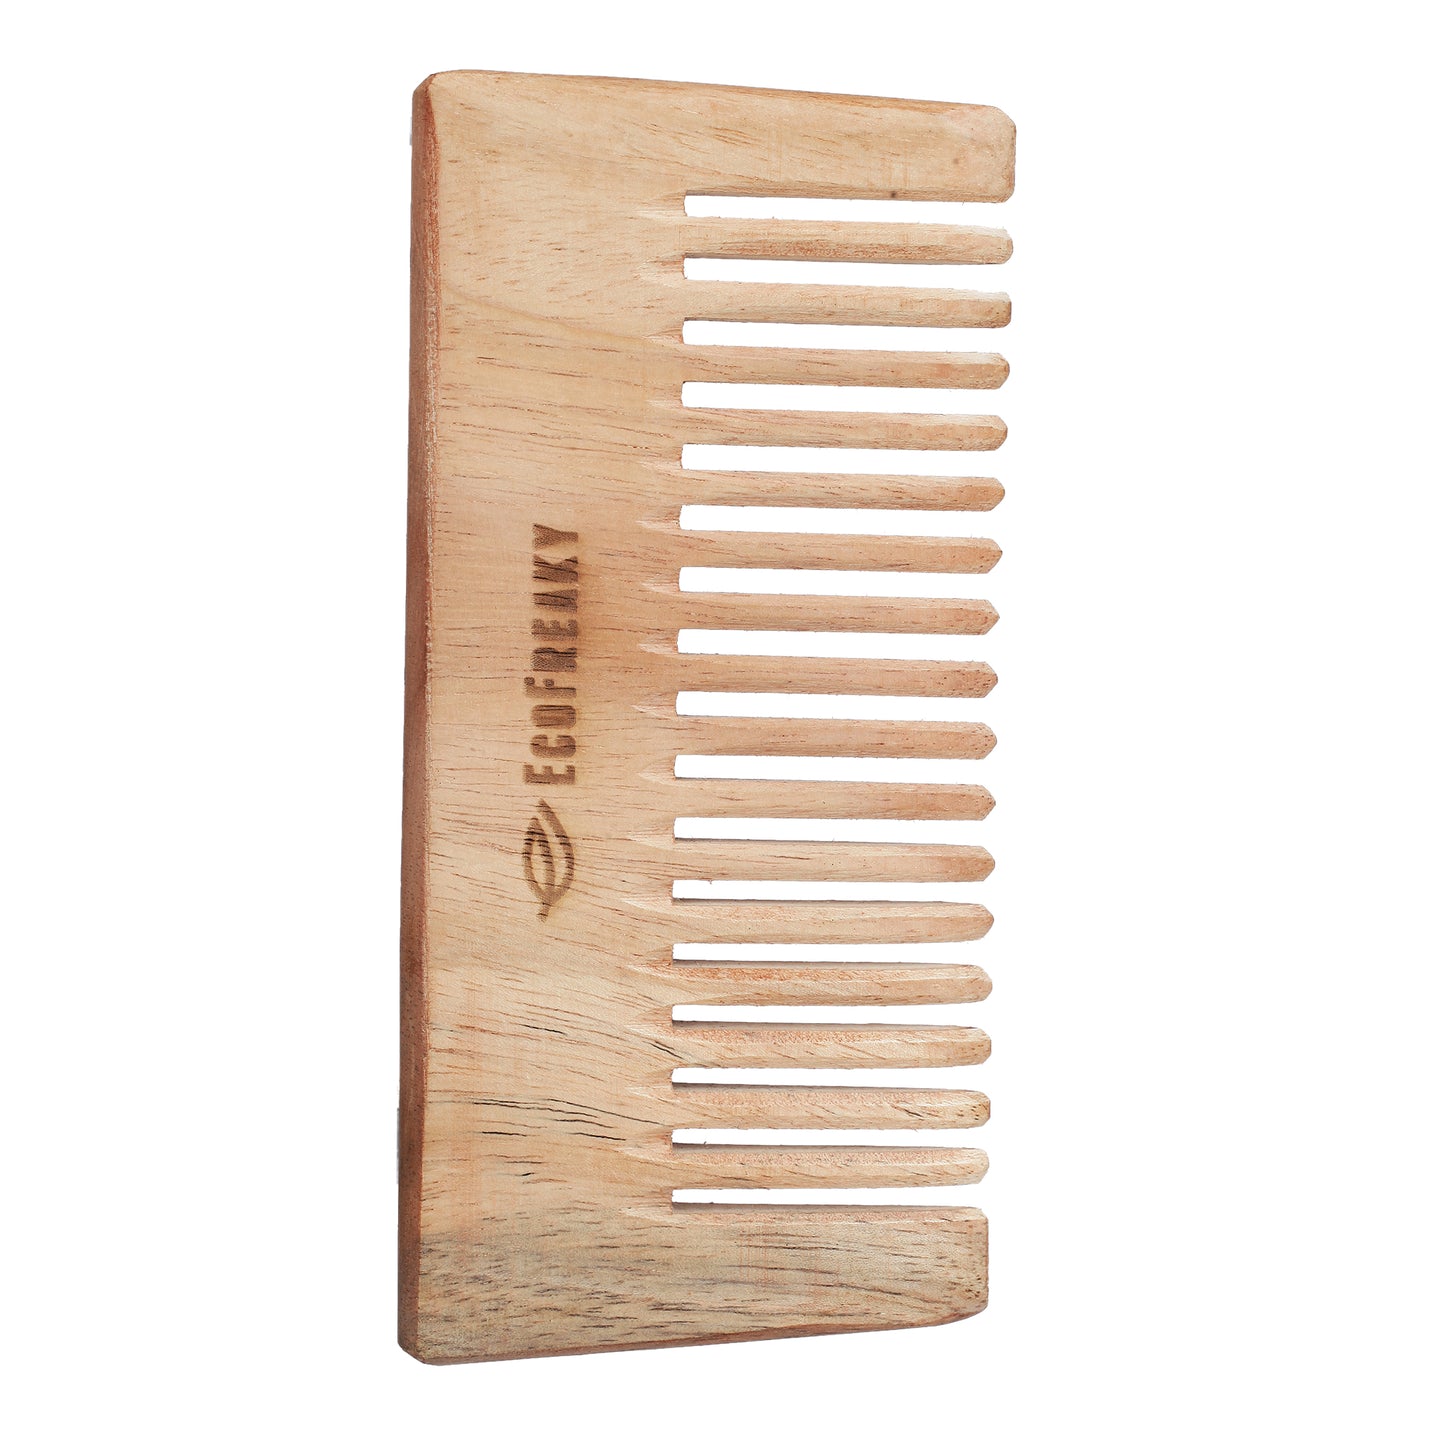 Pure Neem Wood Shampoo Comb | Antibacterial wooden comb